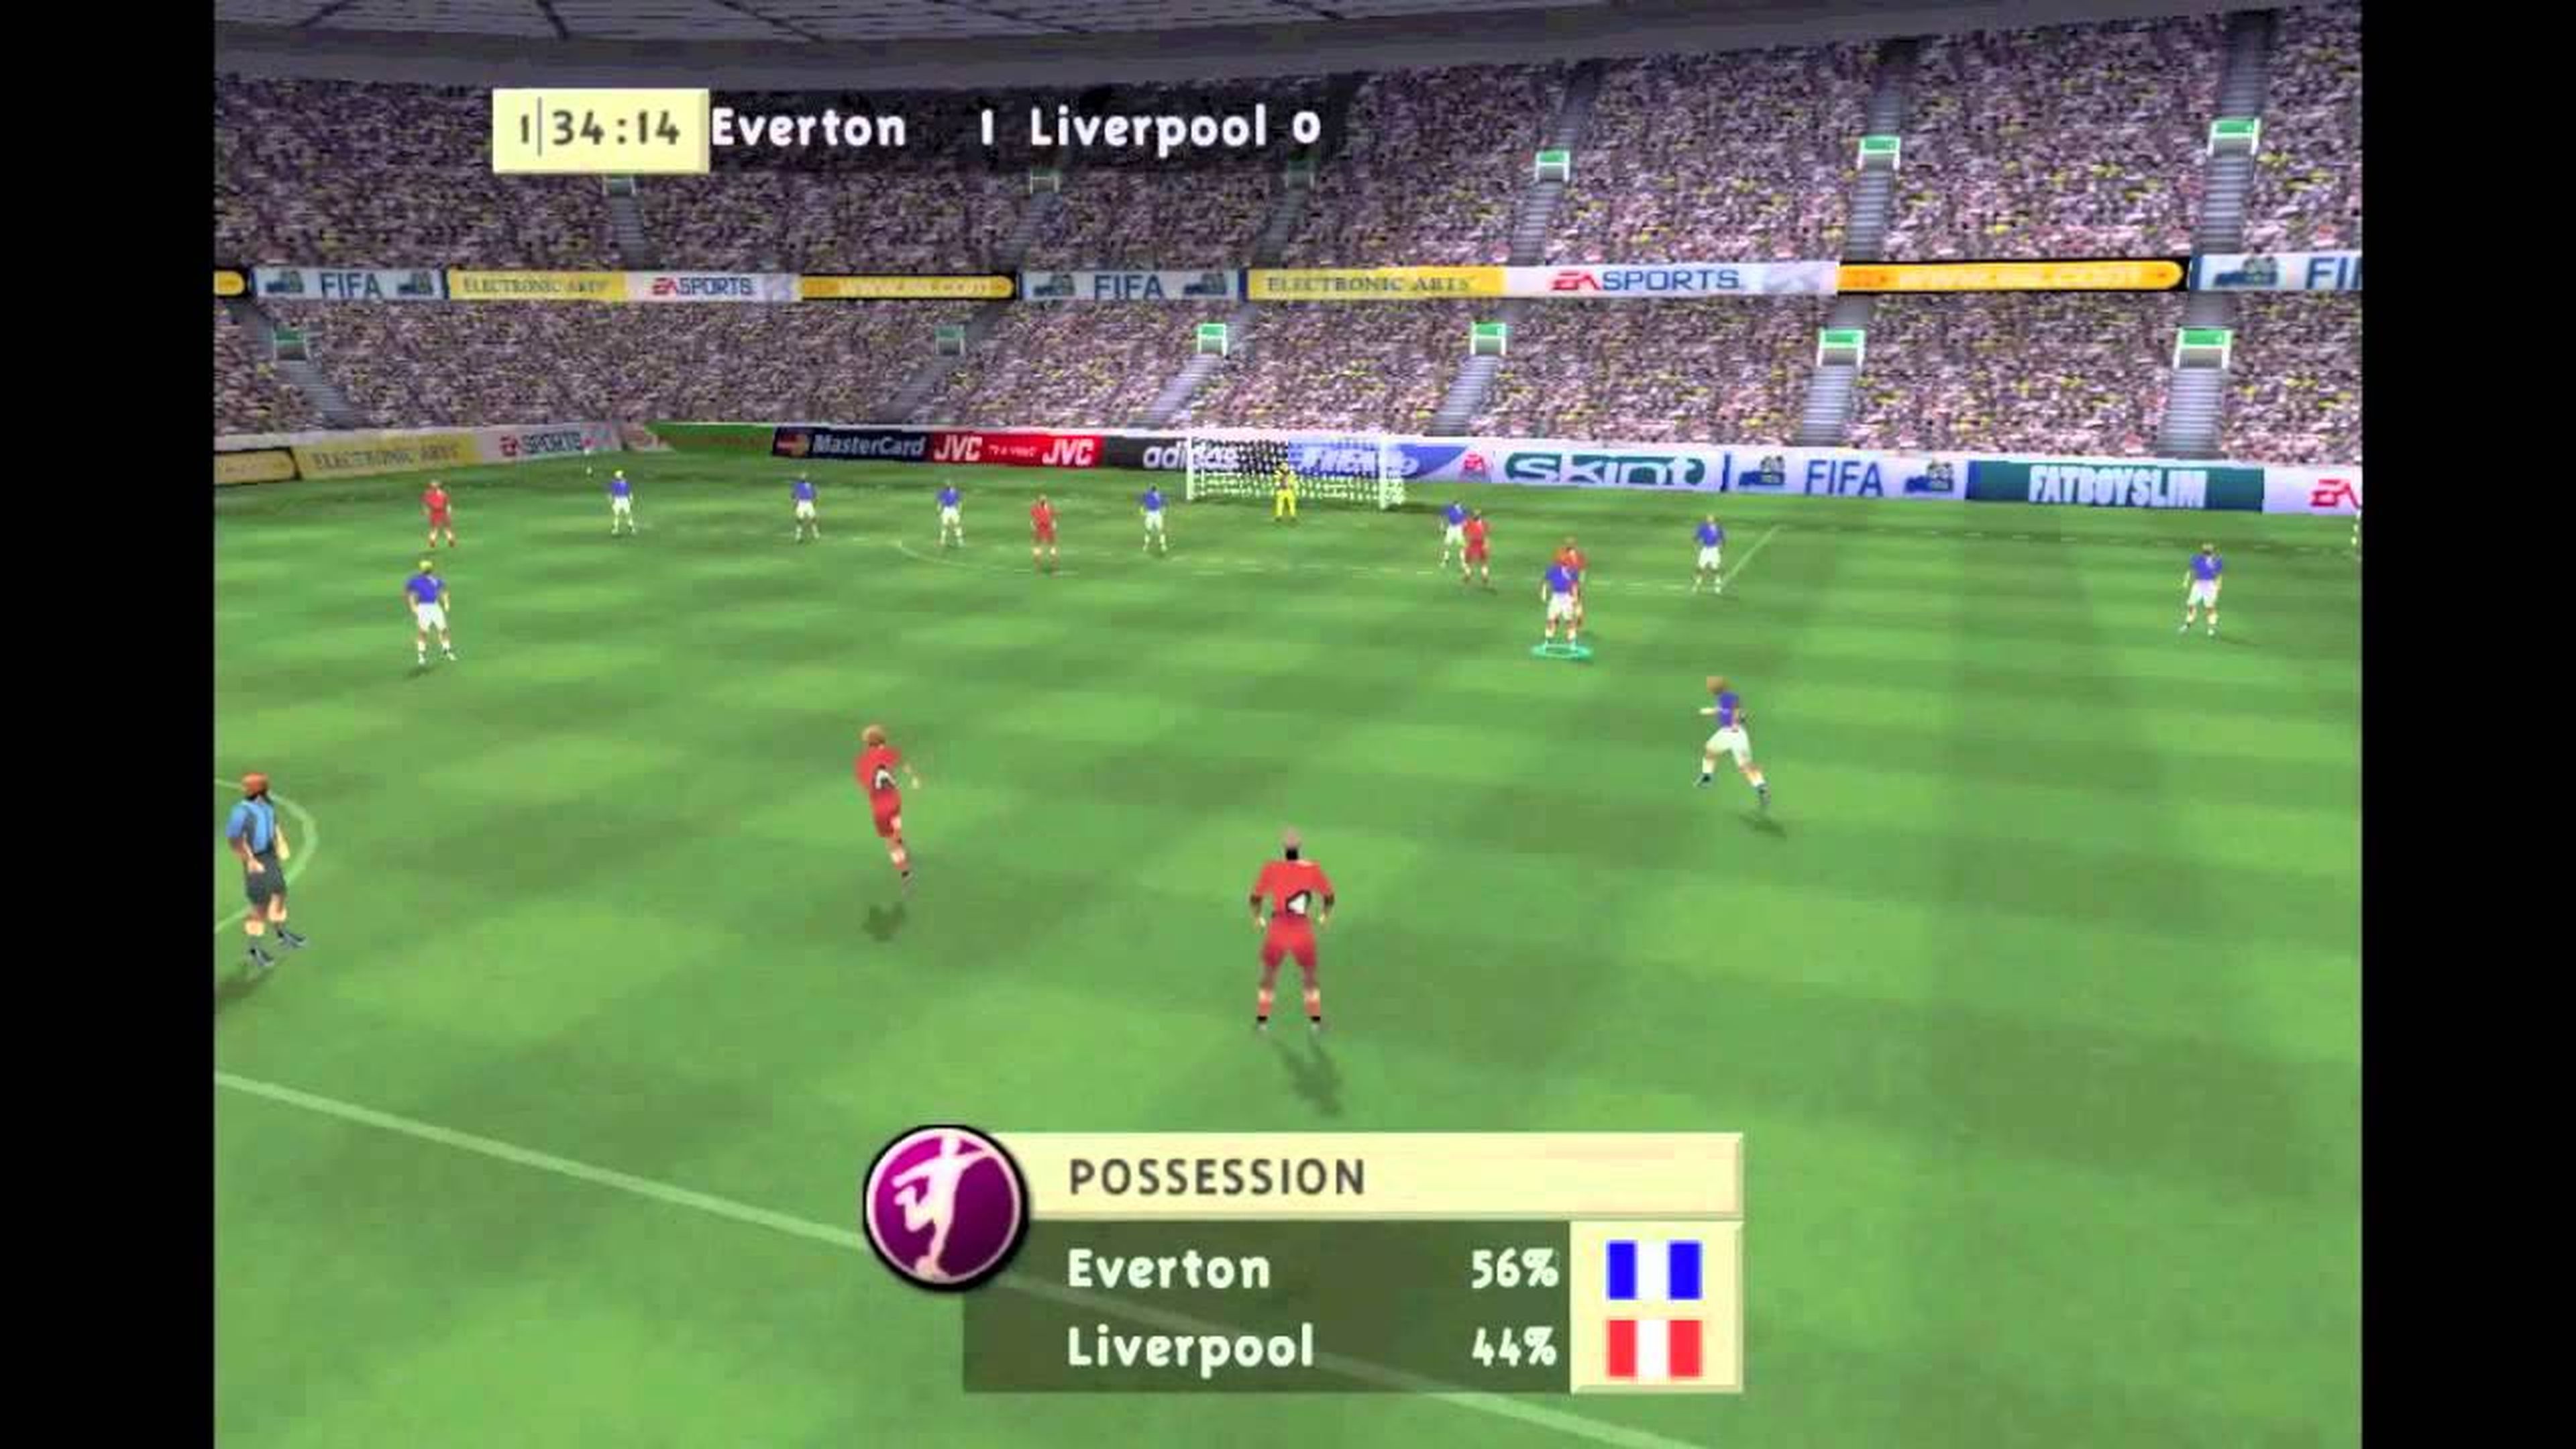 3 videojuegos de futbol para recordar jugadores y partidos clásicos, PES, FIFA, PC, PlayStation 2, PS2, Videojuegos